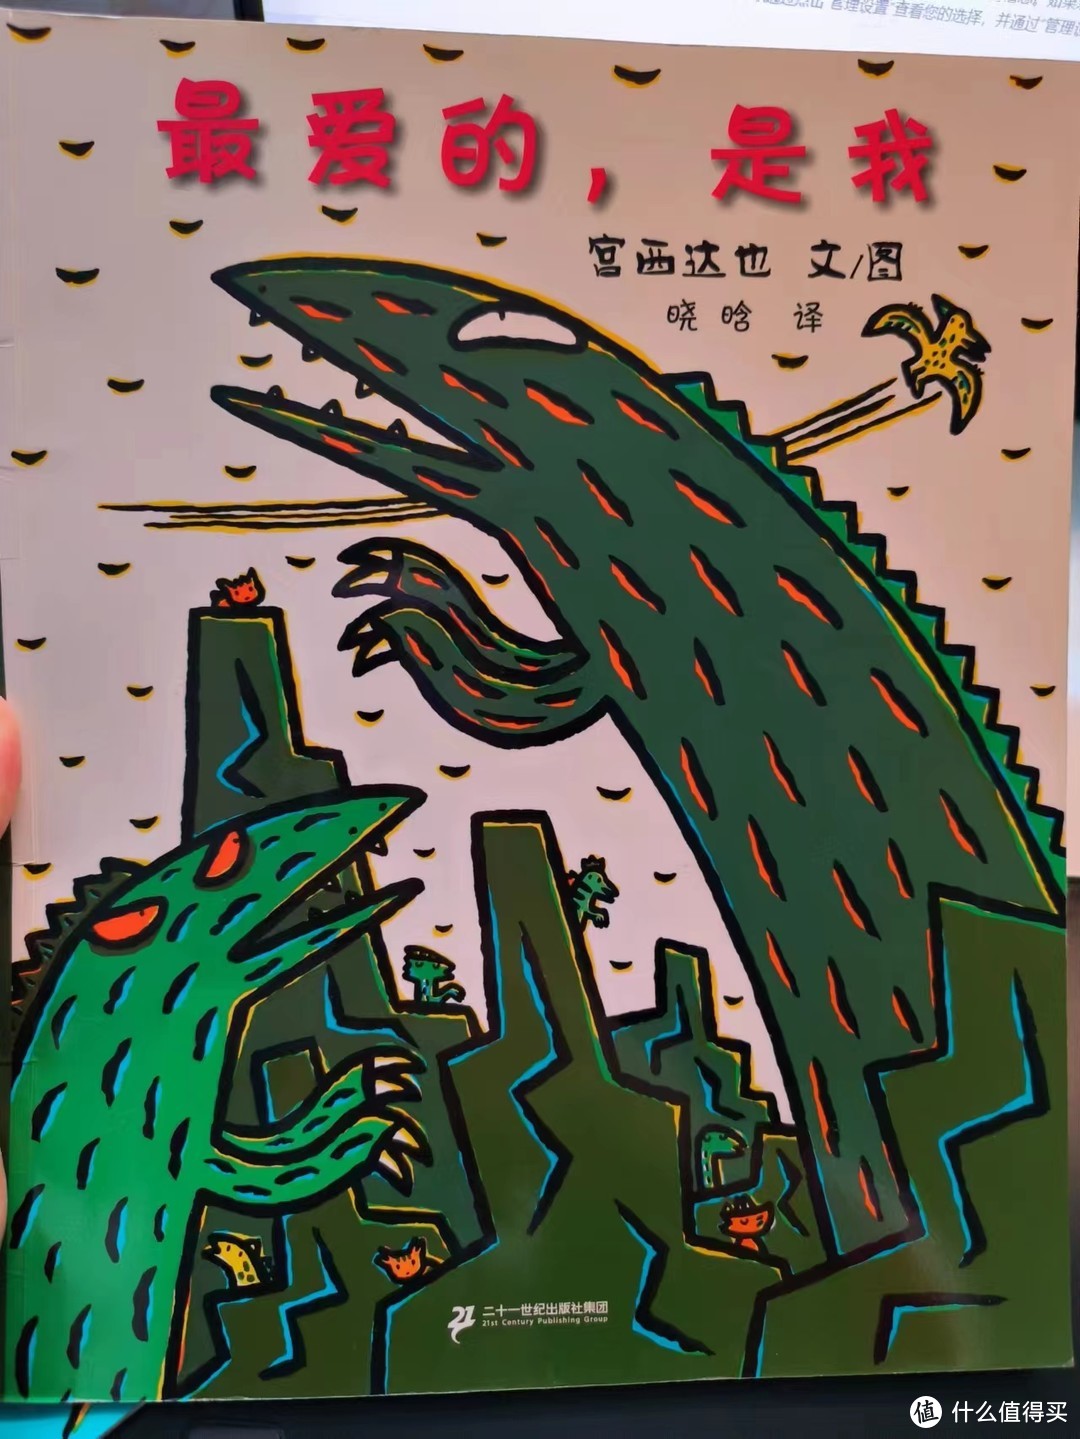 宫西达也恐龙系列绘本让孩子懂得爱与被爱